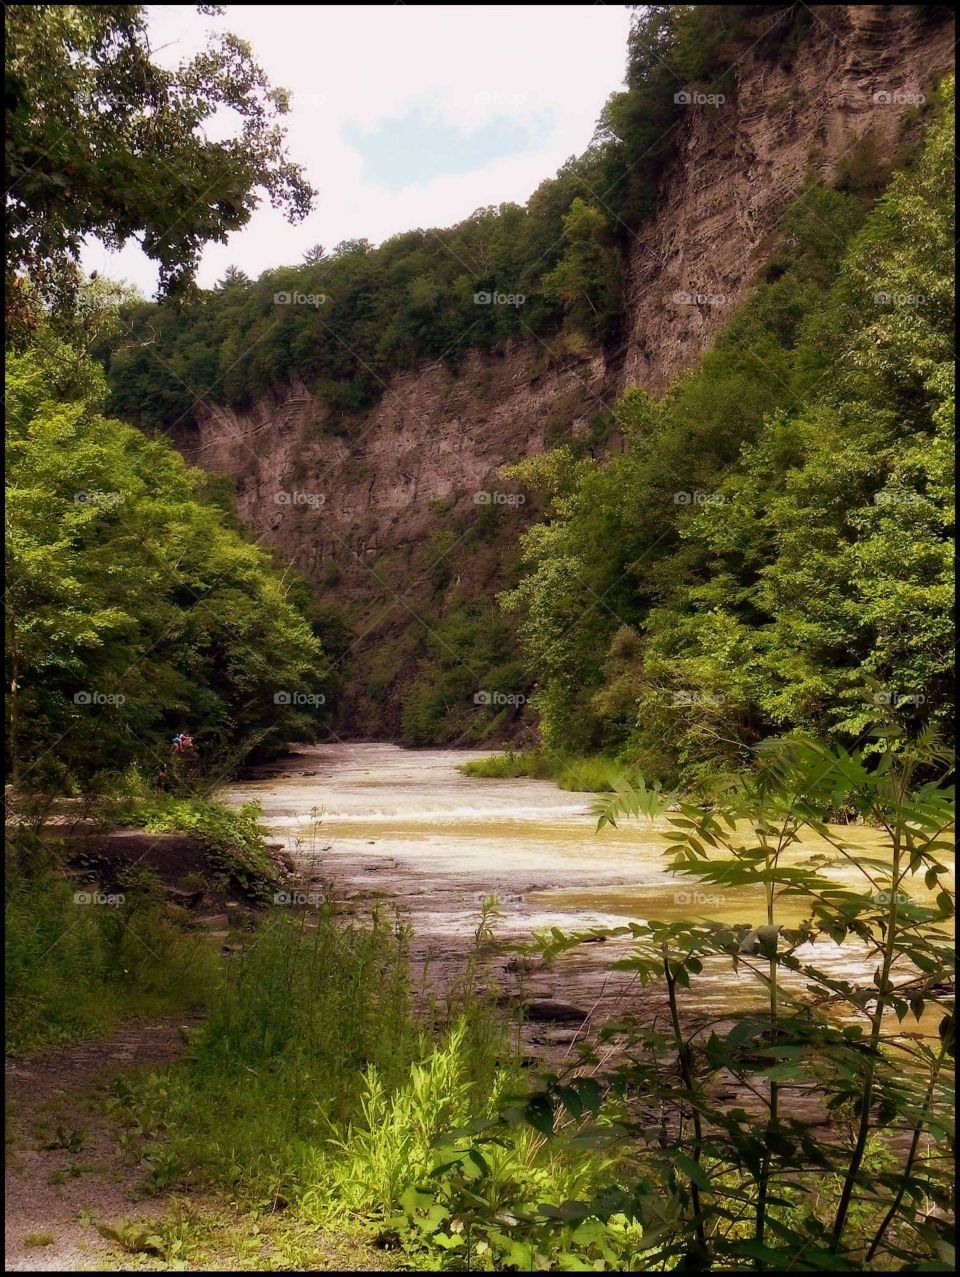 Taughannock falls,  Ithaca N.Y.